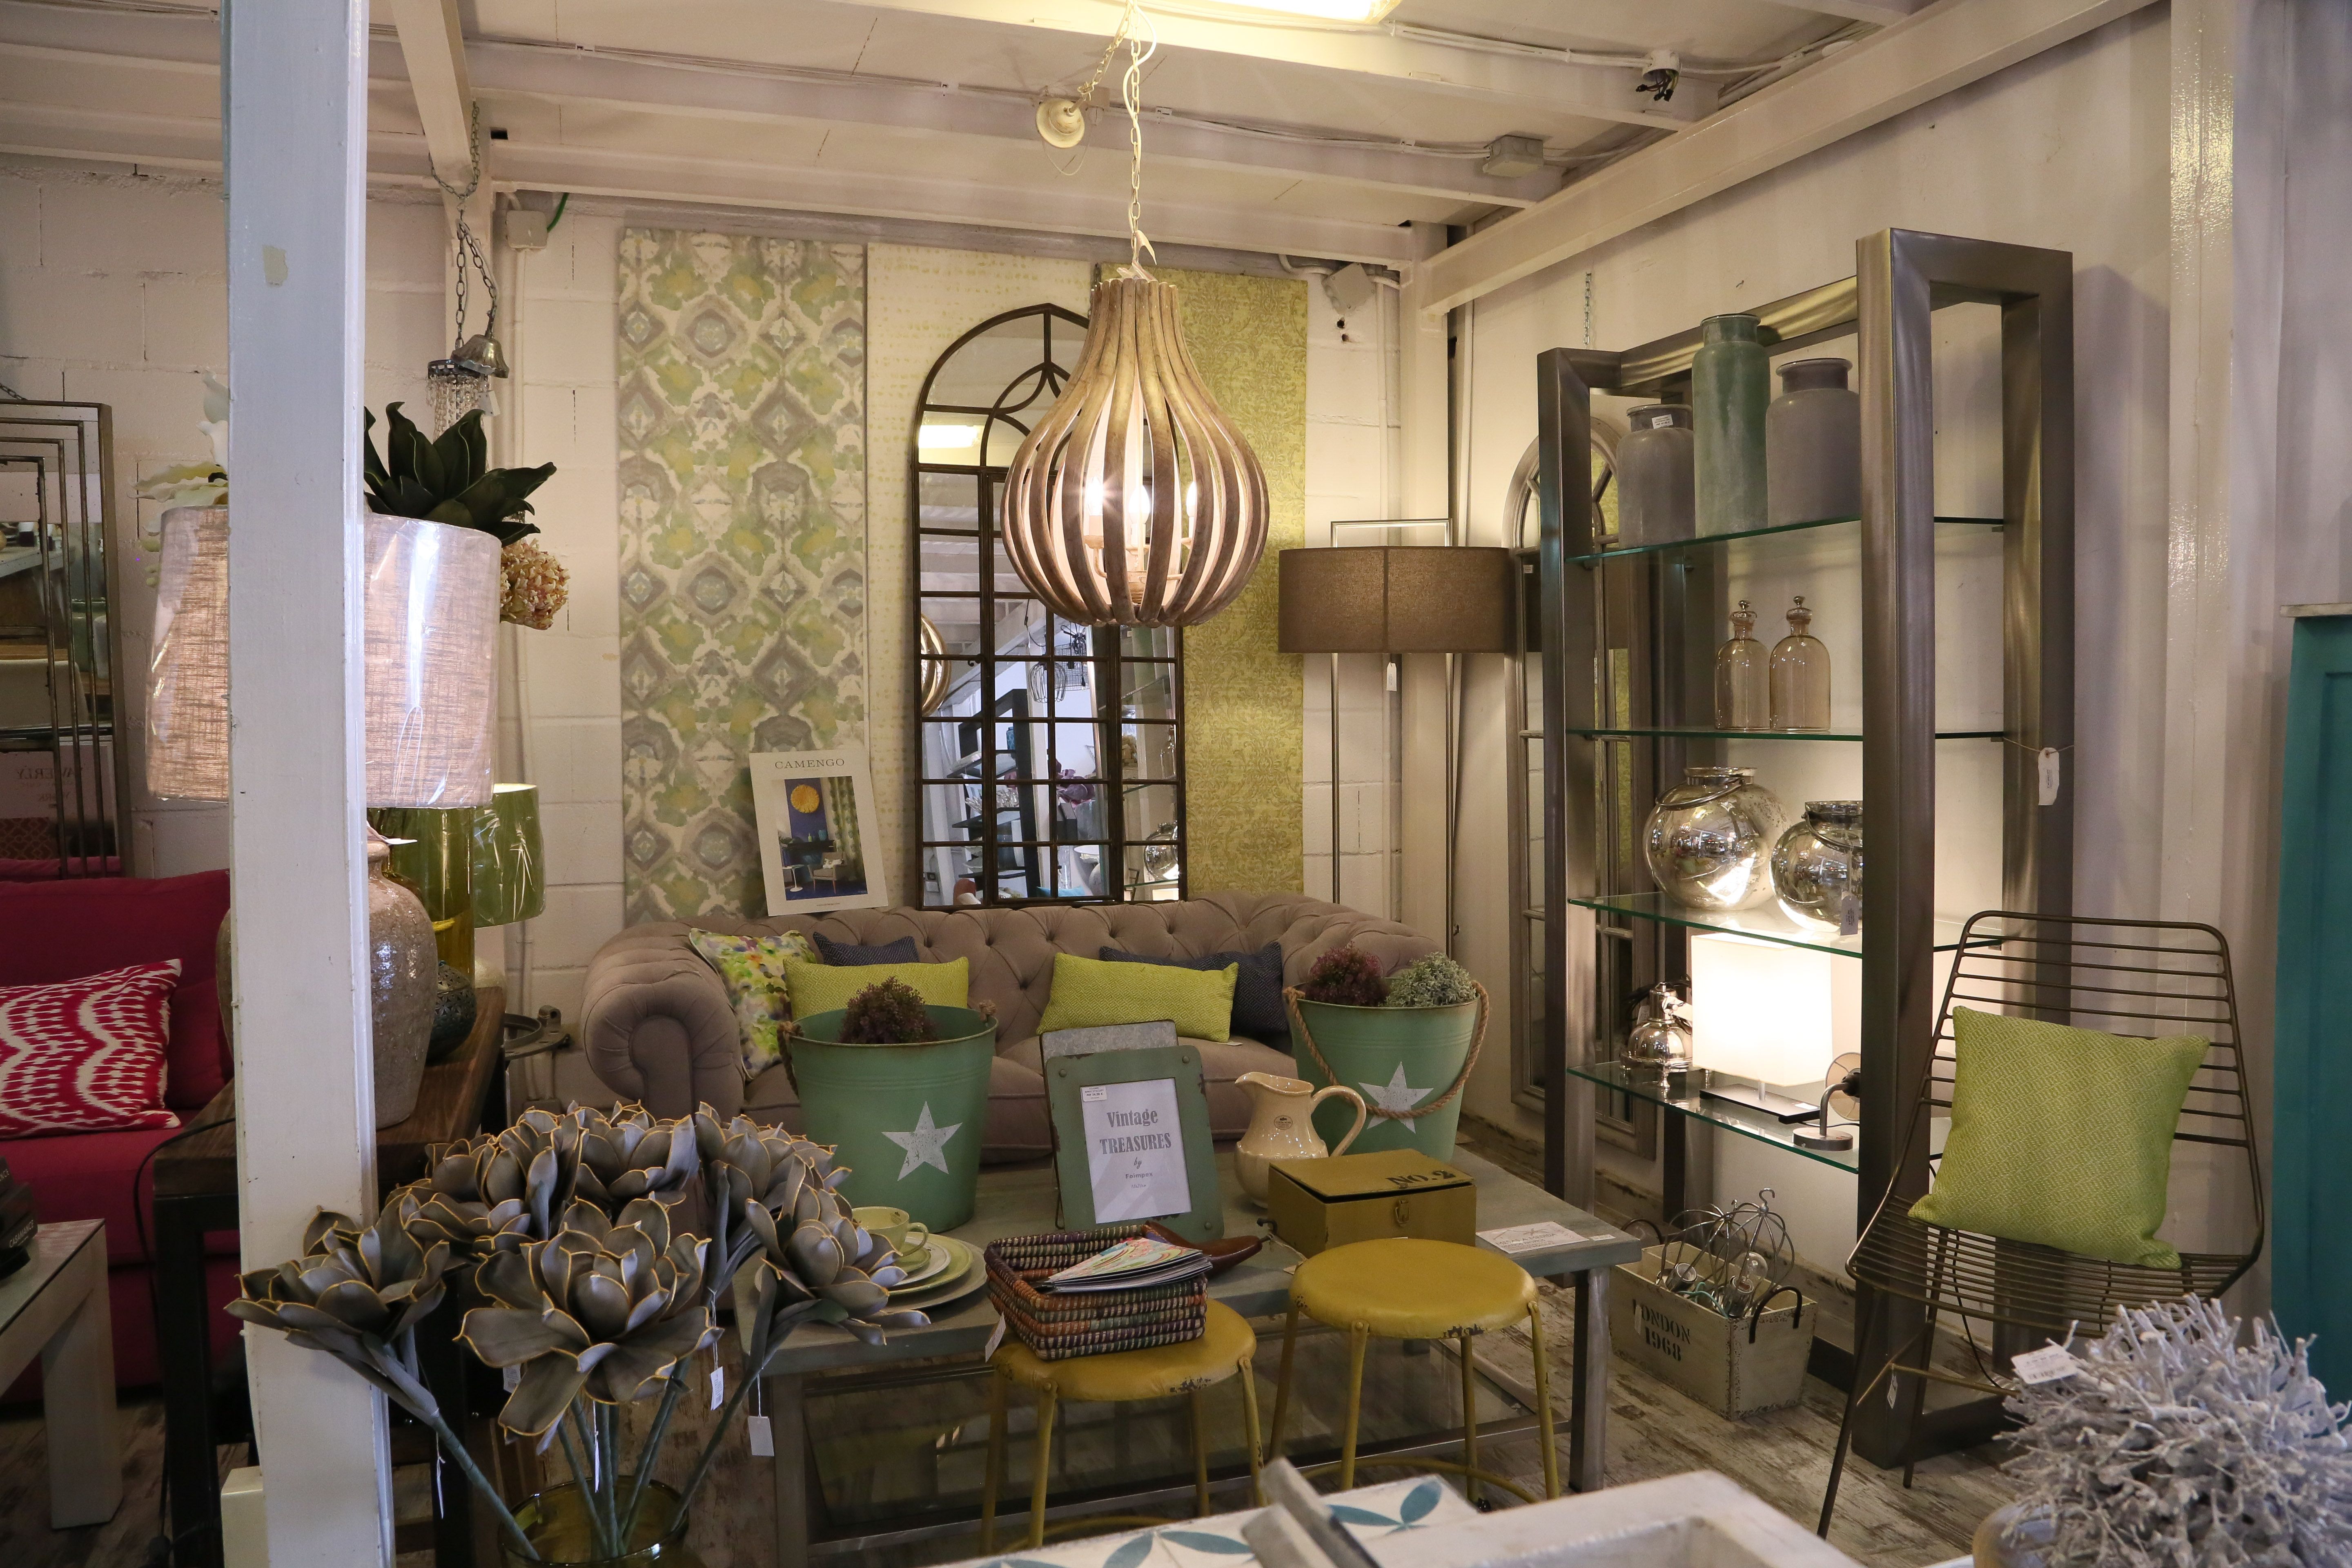 Foto 25 de Muebles y decoración en Las Rozas de Madrid | Casa Nativa